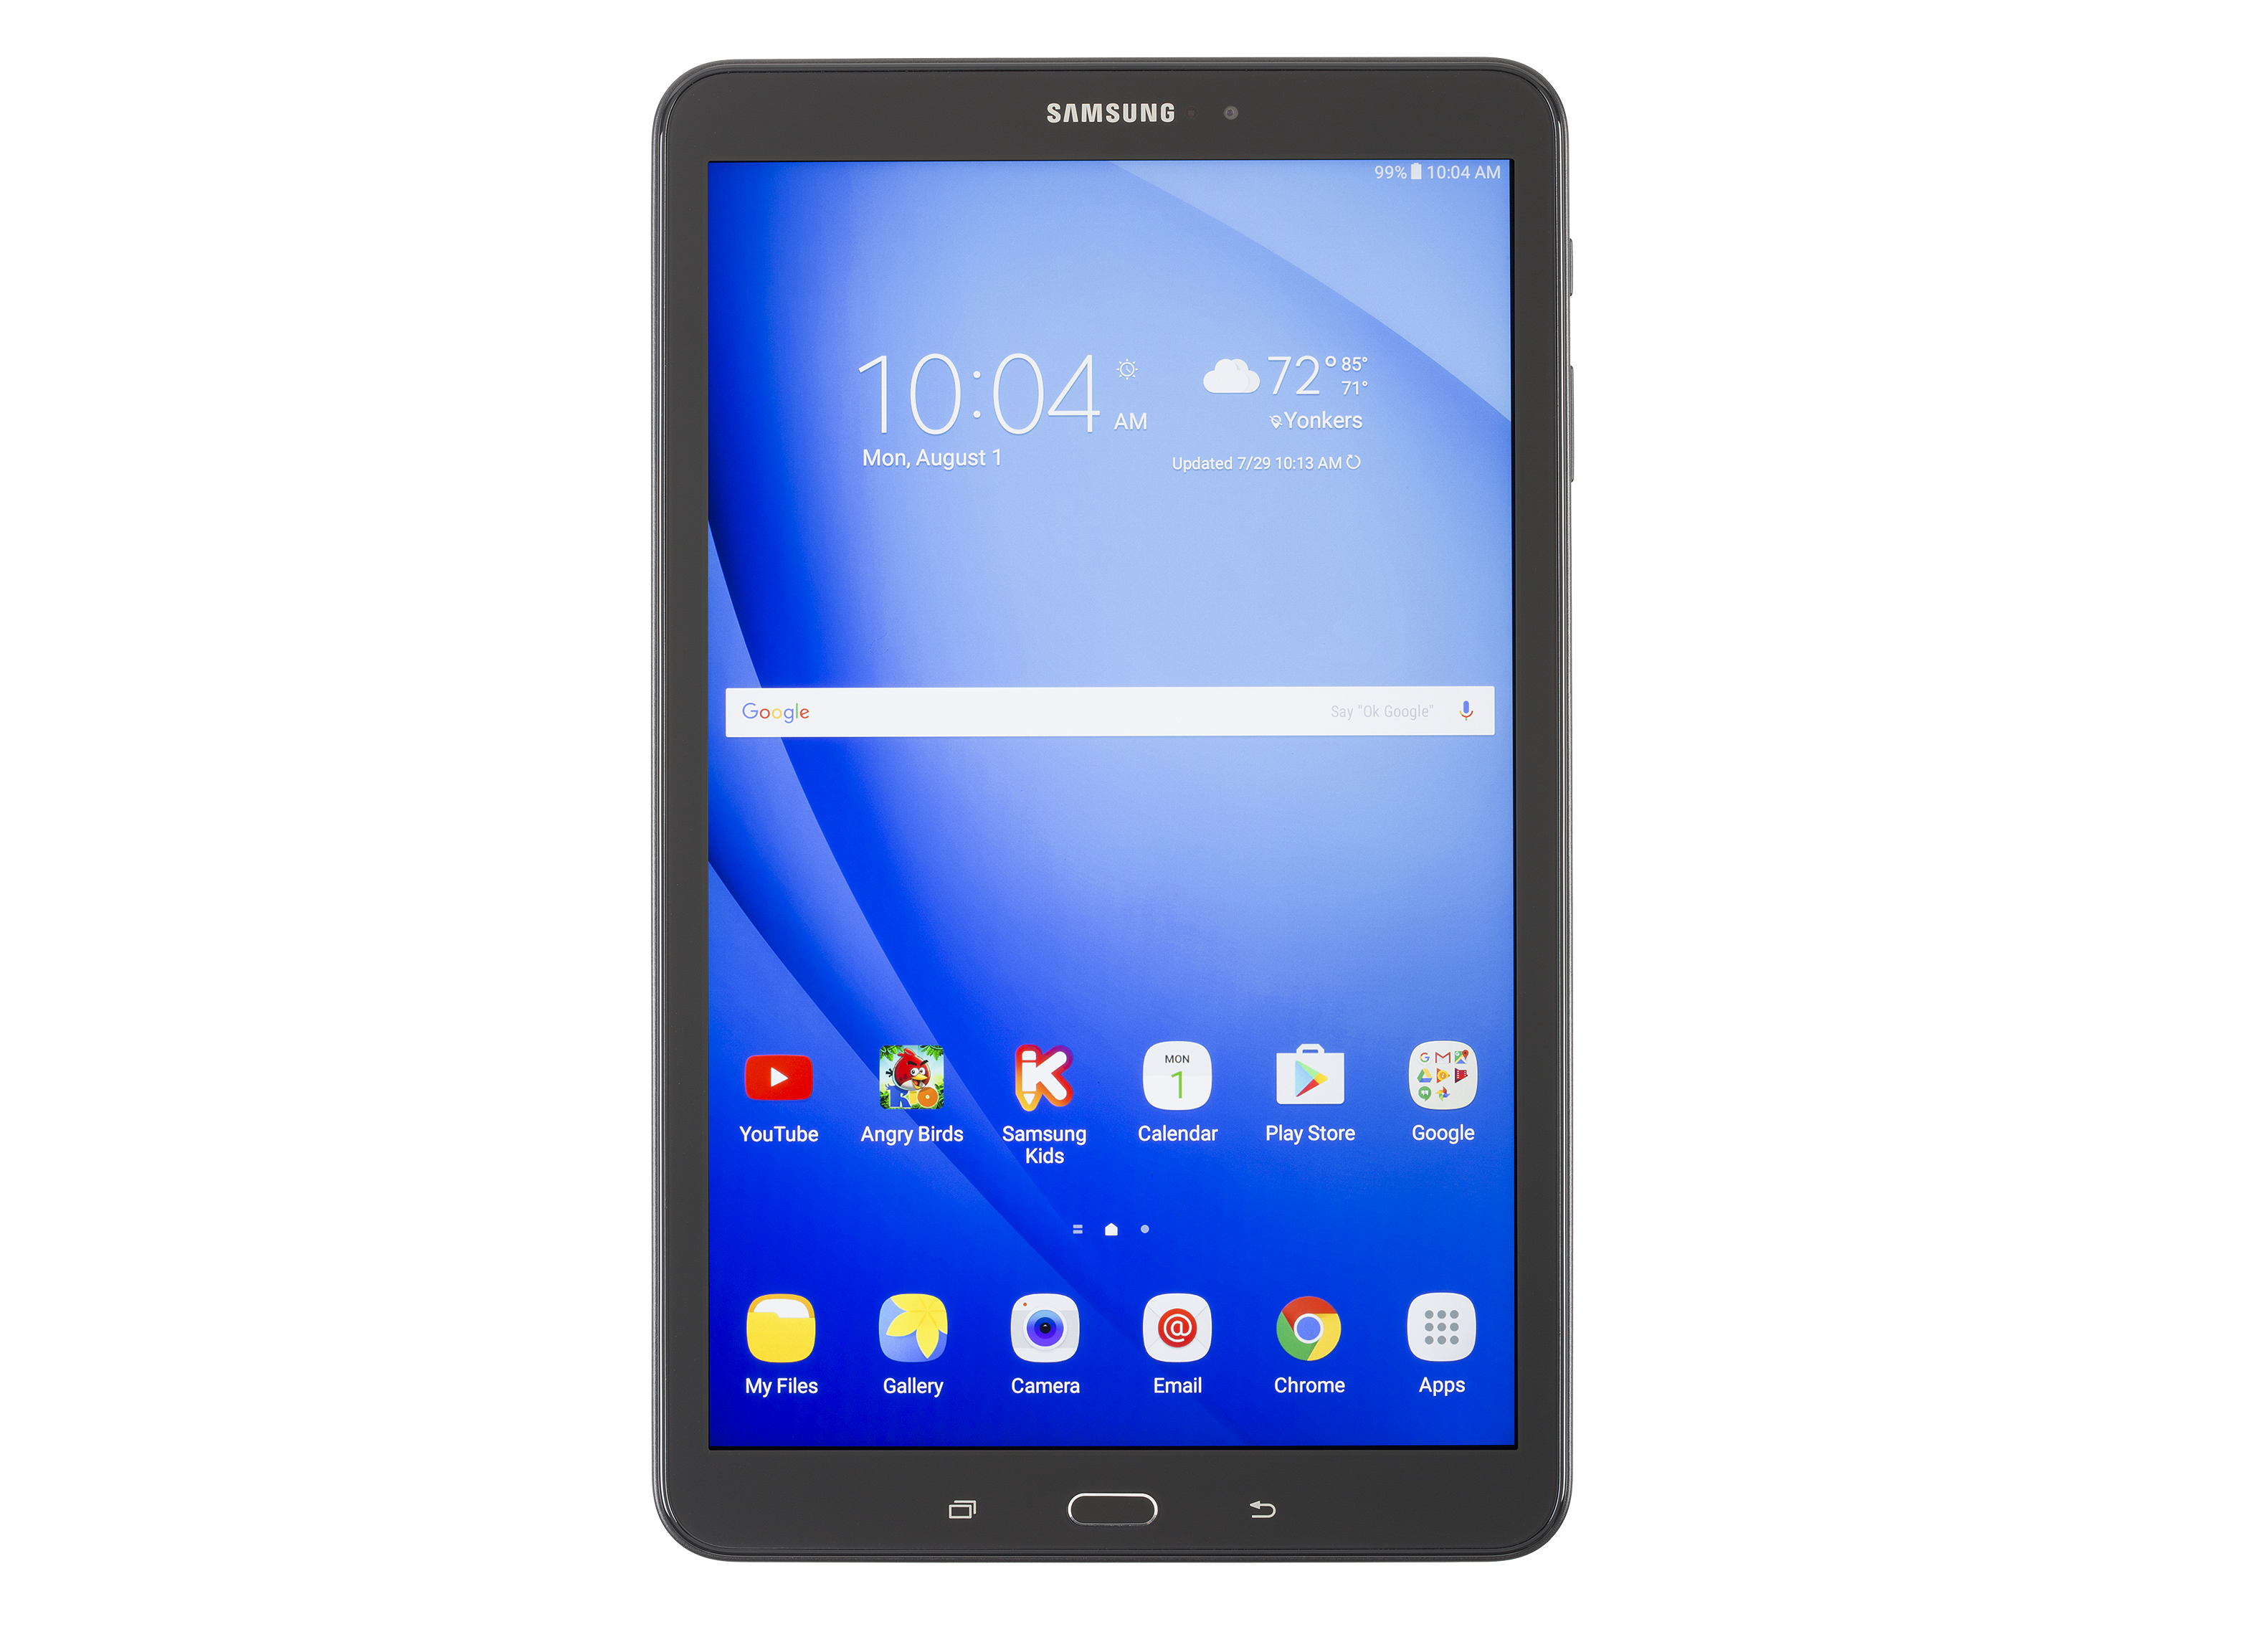 heerlijkheid Niet ingewikkeld deur Samsung Galaxy Tab A 10.1 SM-T580 (16GB) Tablet - Consumer Reports